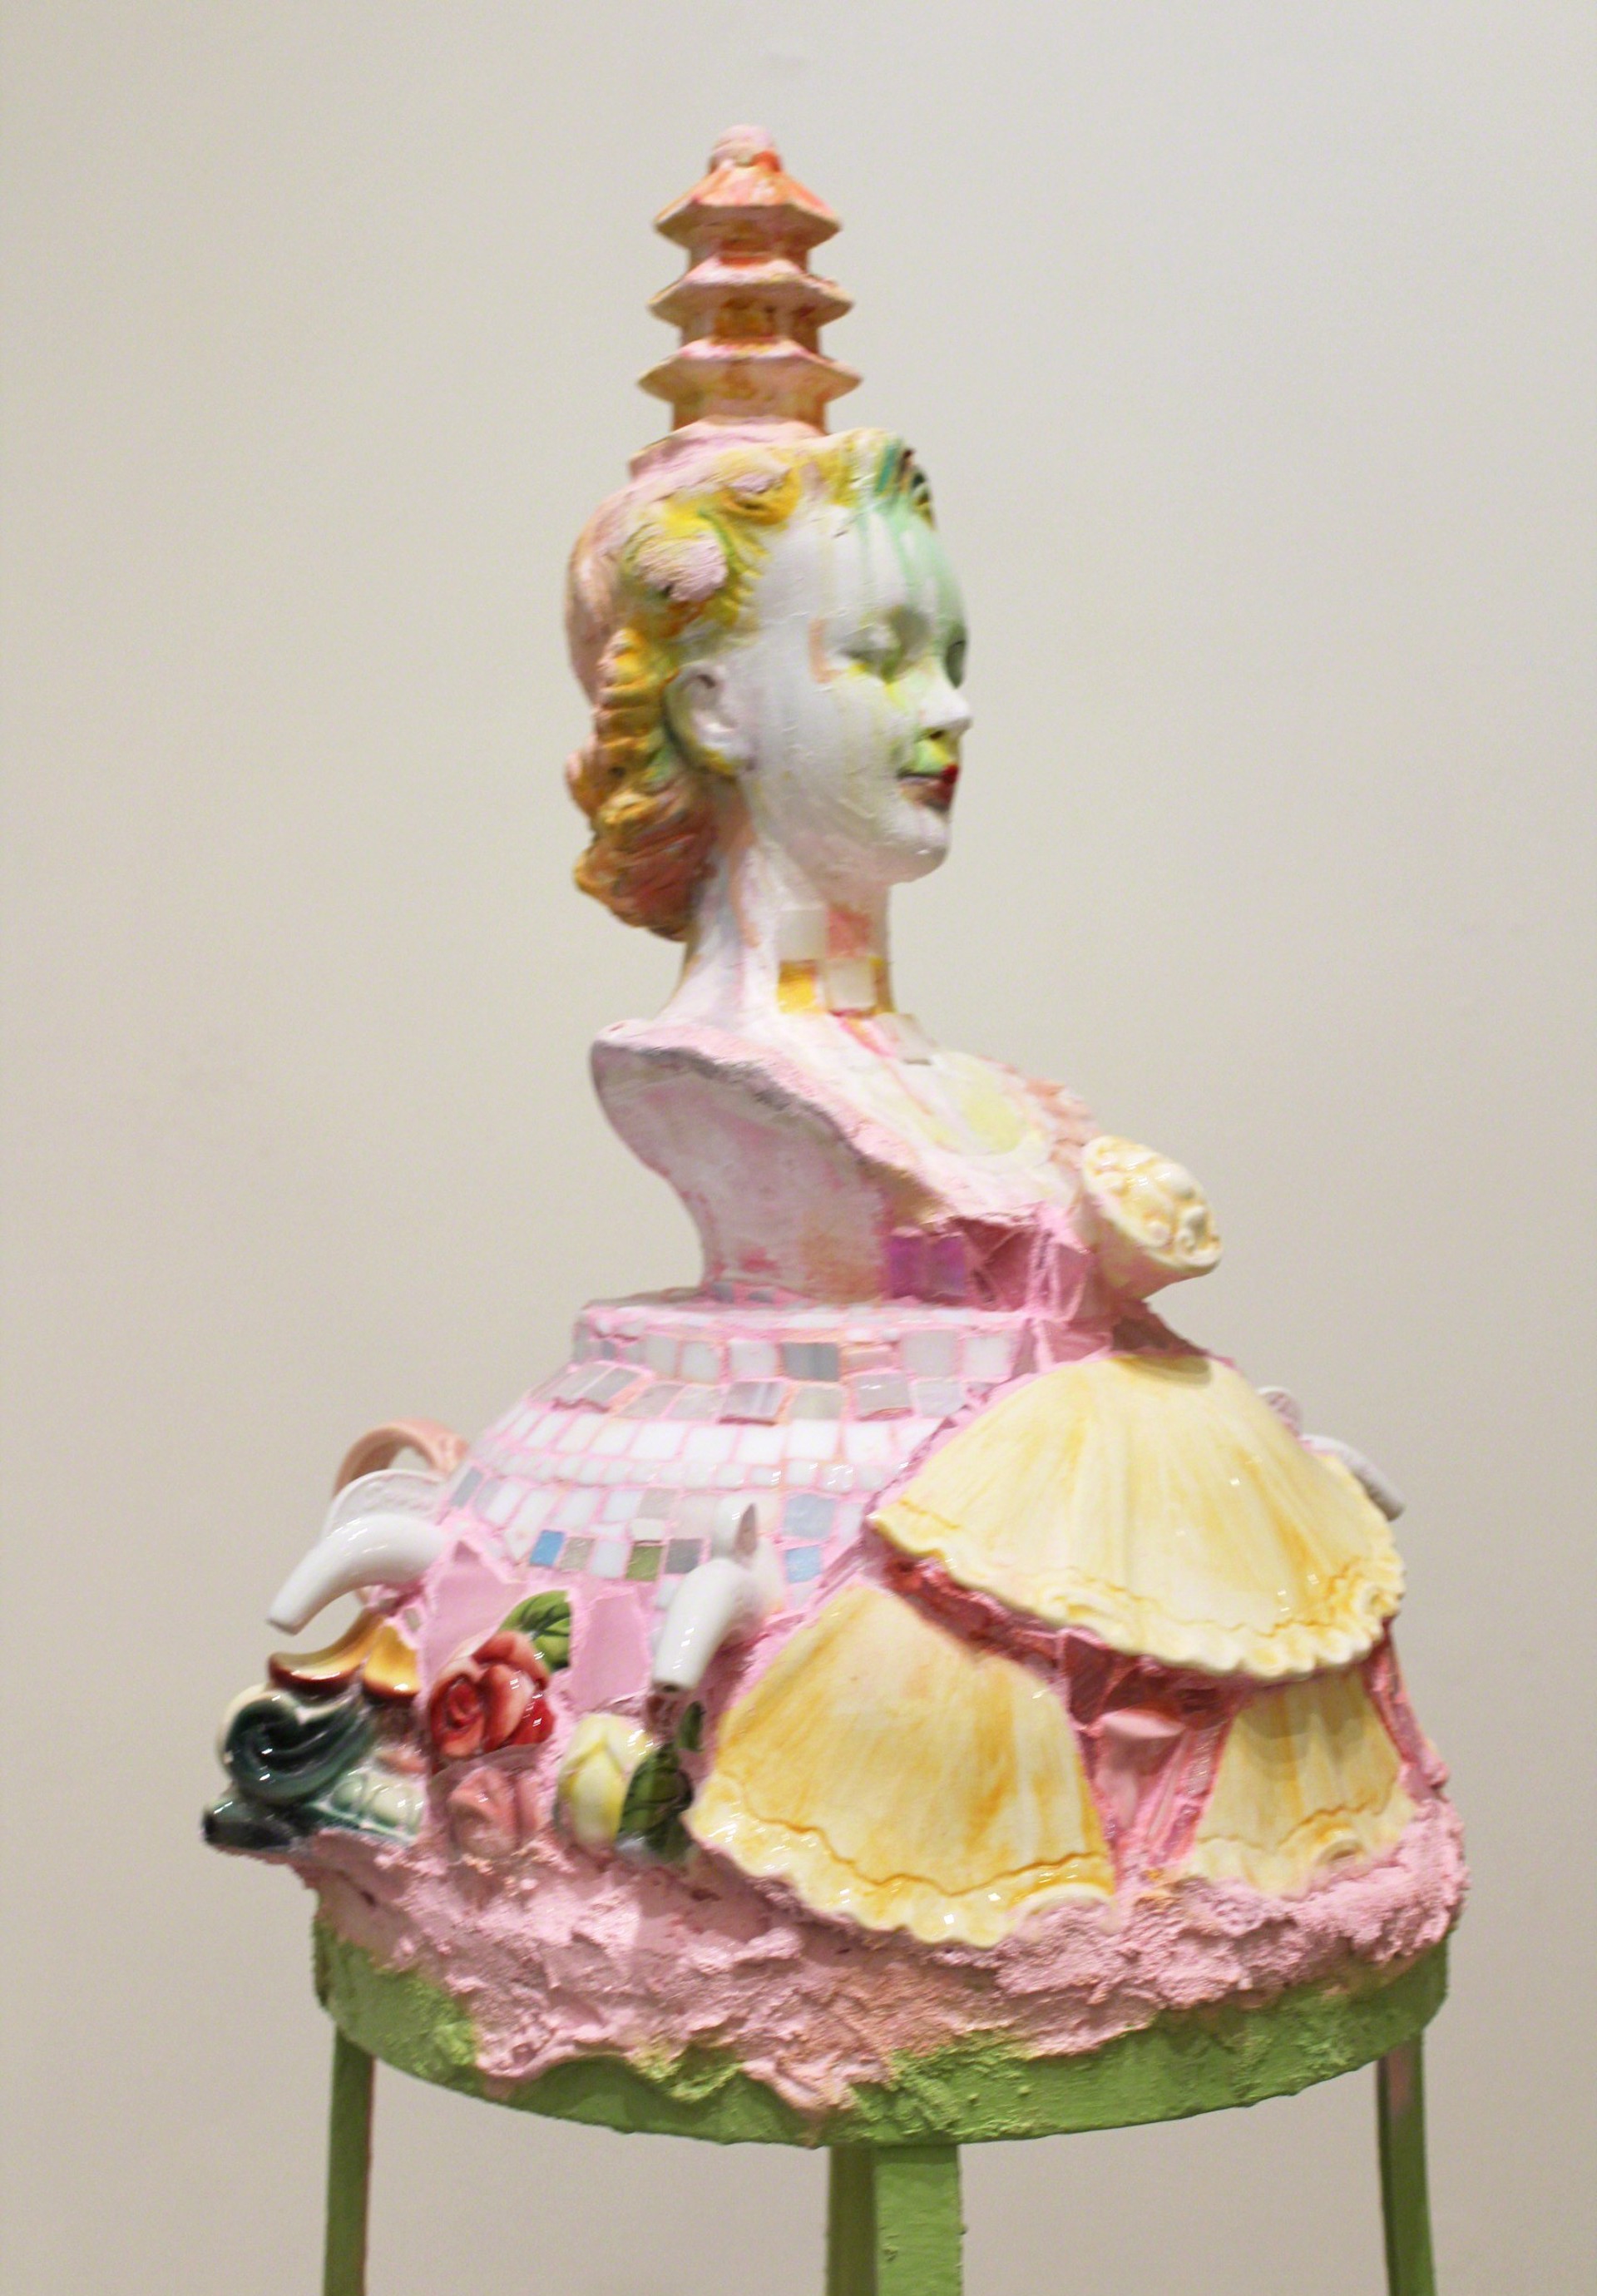 Cake by Shannon Landis Hansen